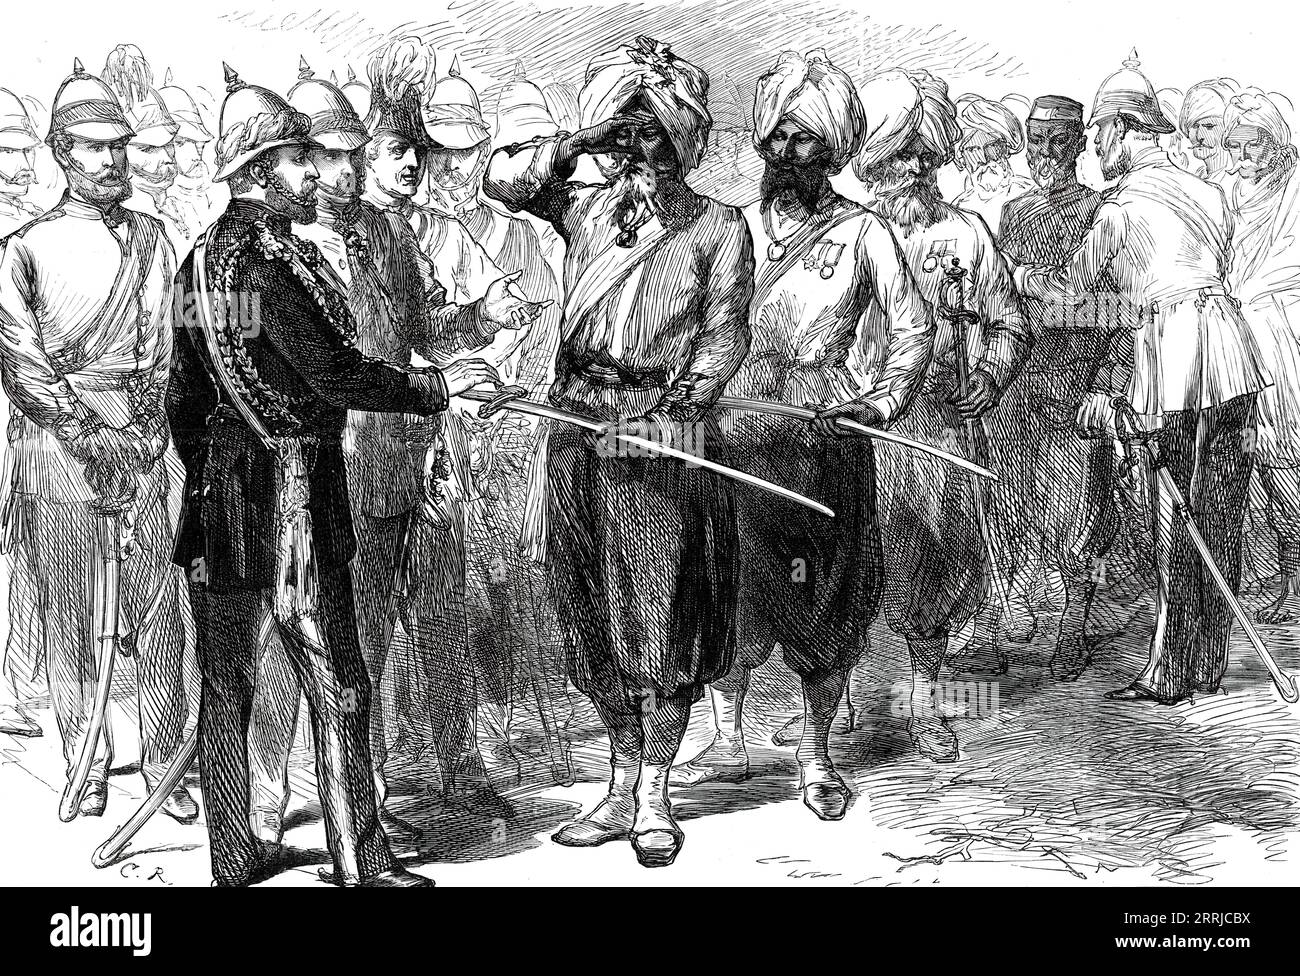 Il Principe di Galles riceve i sopravvissuti della difesa di Lucknow, da uno schizzo di uno dei nostri artisti speciali, 1876. "Per rendere più efficace la cerimonia di posa della pietra, eseguita dal principe, le truppe che presentavano armi e artiglieria in saluto, i sopravvissuti dei difensori nativi erano stati raccolti da Oude e da altre parti dell'India. Queste, nelle loro vecchie uniformi, erano state redatte a portata di mano... tra i presenti c'era il vecchio Ungud, la famosa spia, e Carronjee Lai], il compagno di Kavanagh nella sua audace avventura. Il principe ne ha parlato molto gentilmente all'entertai nativo Foto Stock